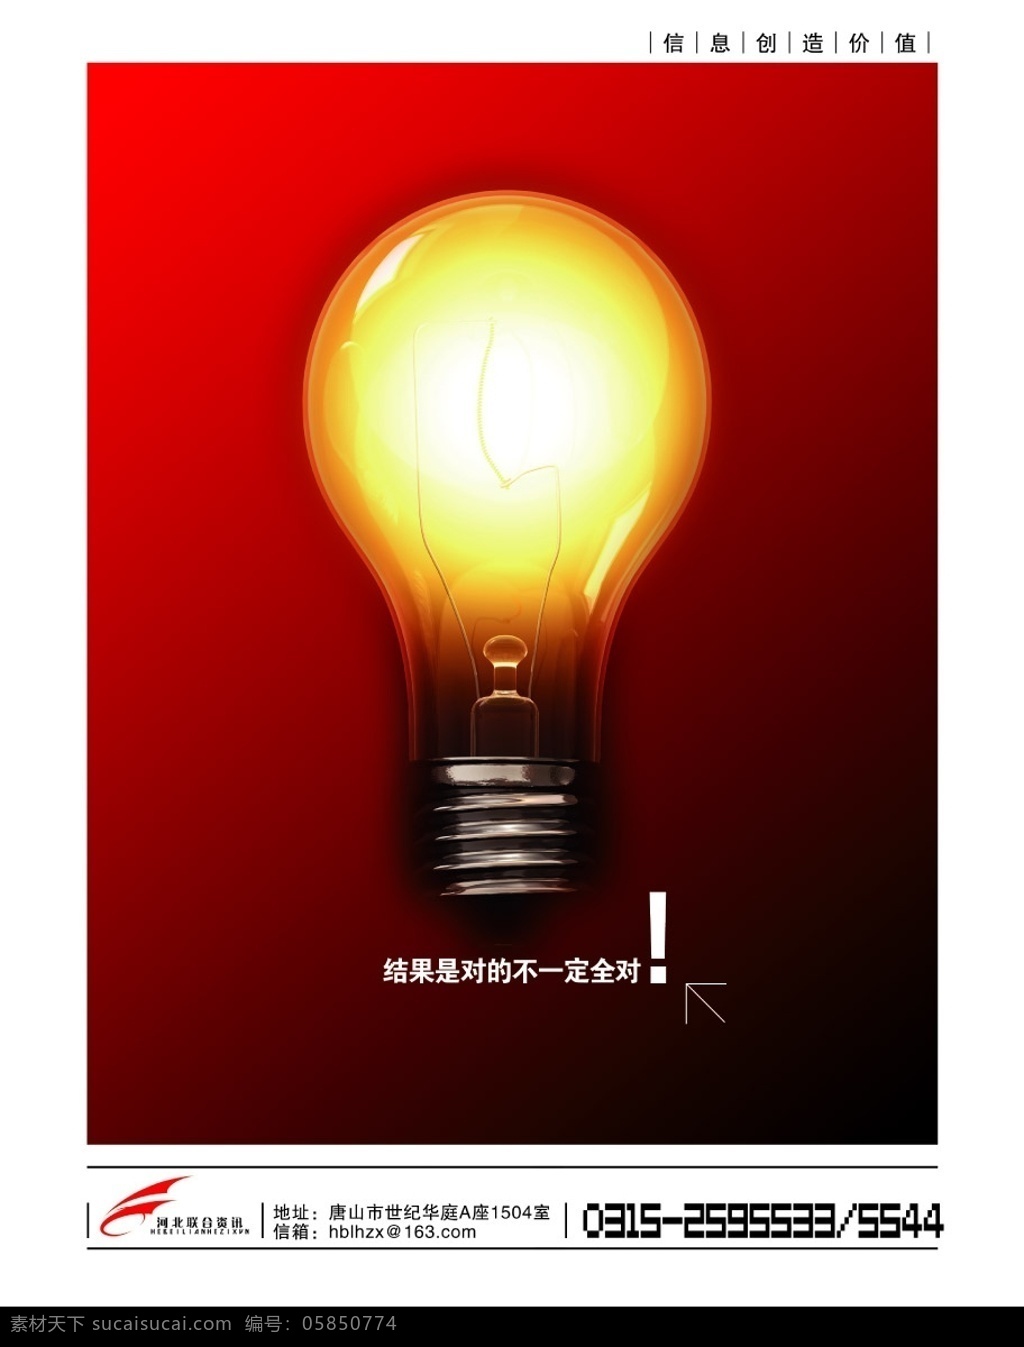 完全正确 灯泡 电灯 照明 红色 艺术 知识 文化 创作 创意 广告设计模板 源文件库